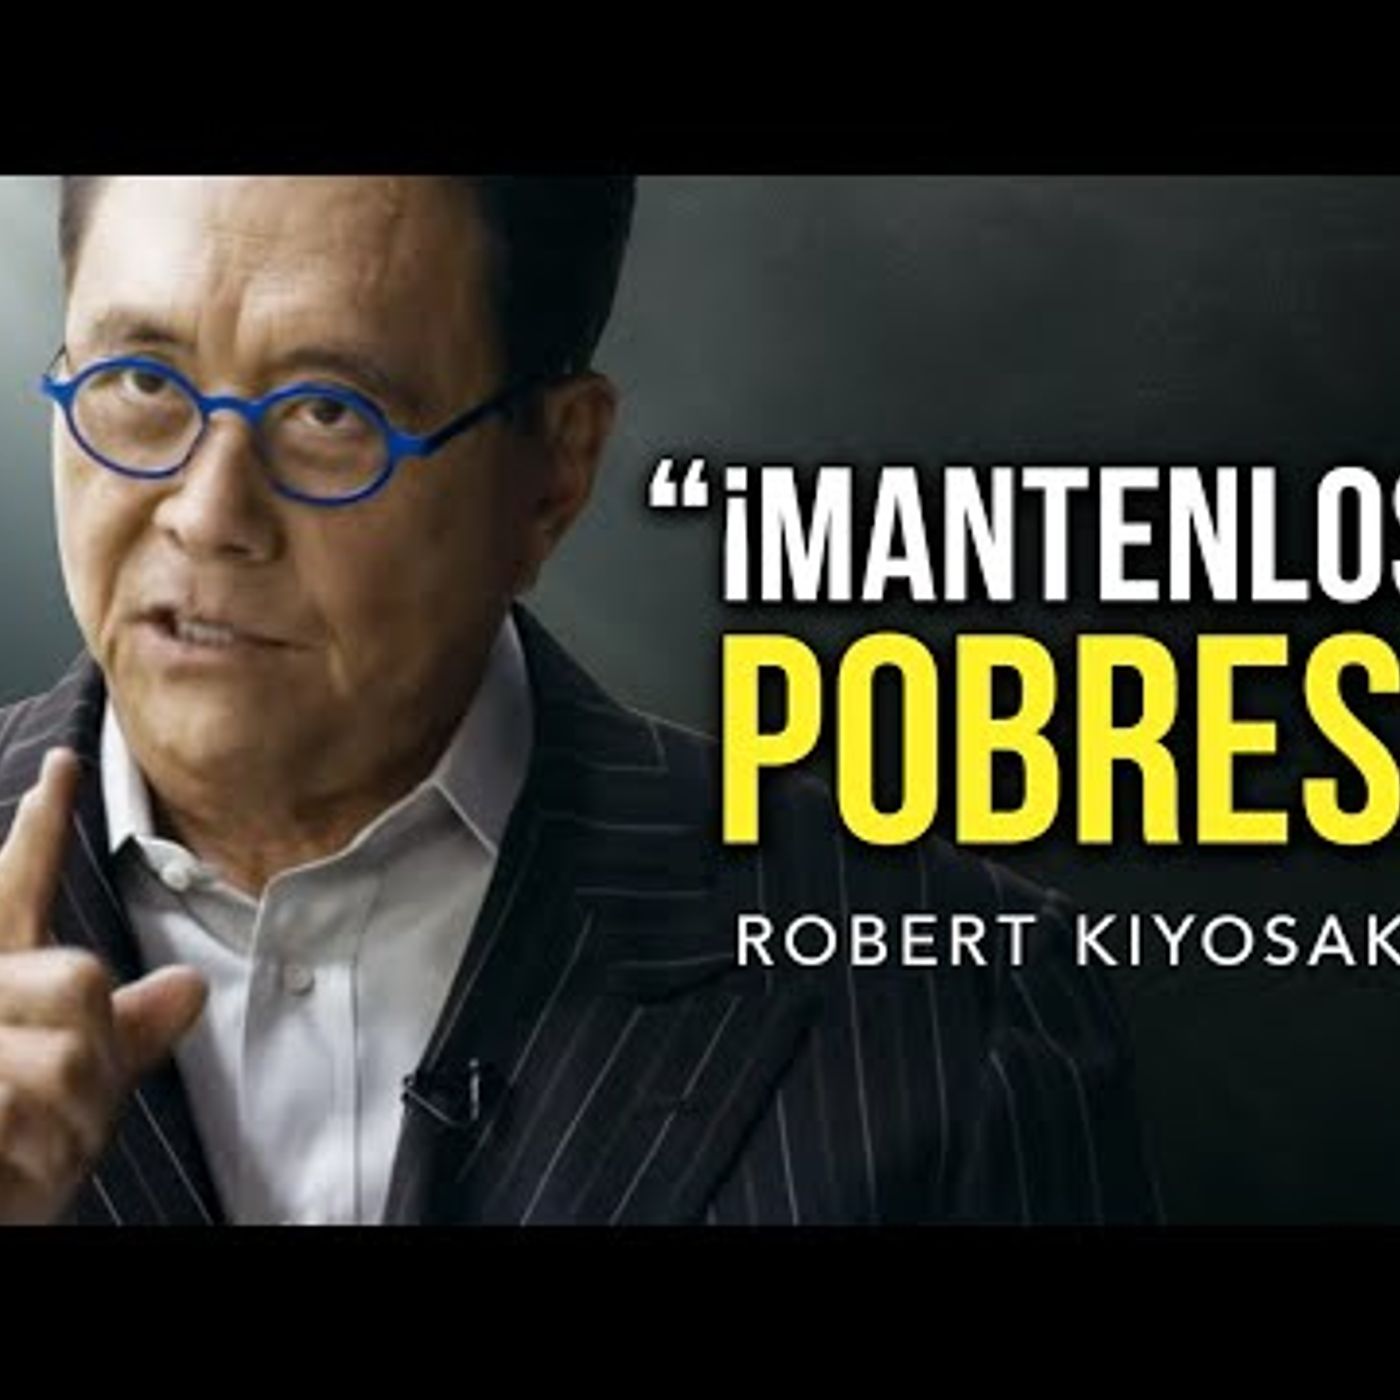 Robert Kiyosaki 2019 - ¡¡¡El discurso más famoso del internet!!! ¡¡¡MANTENLOS POBRES!!!